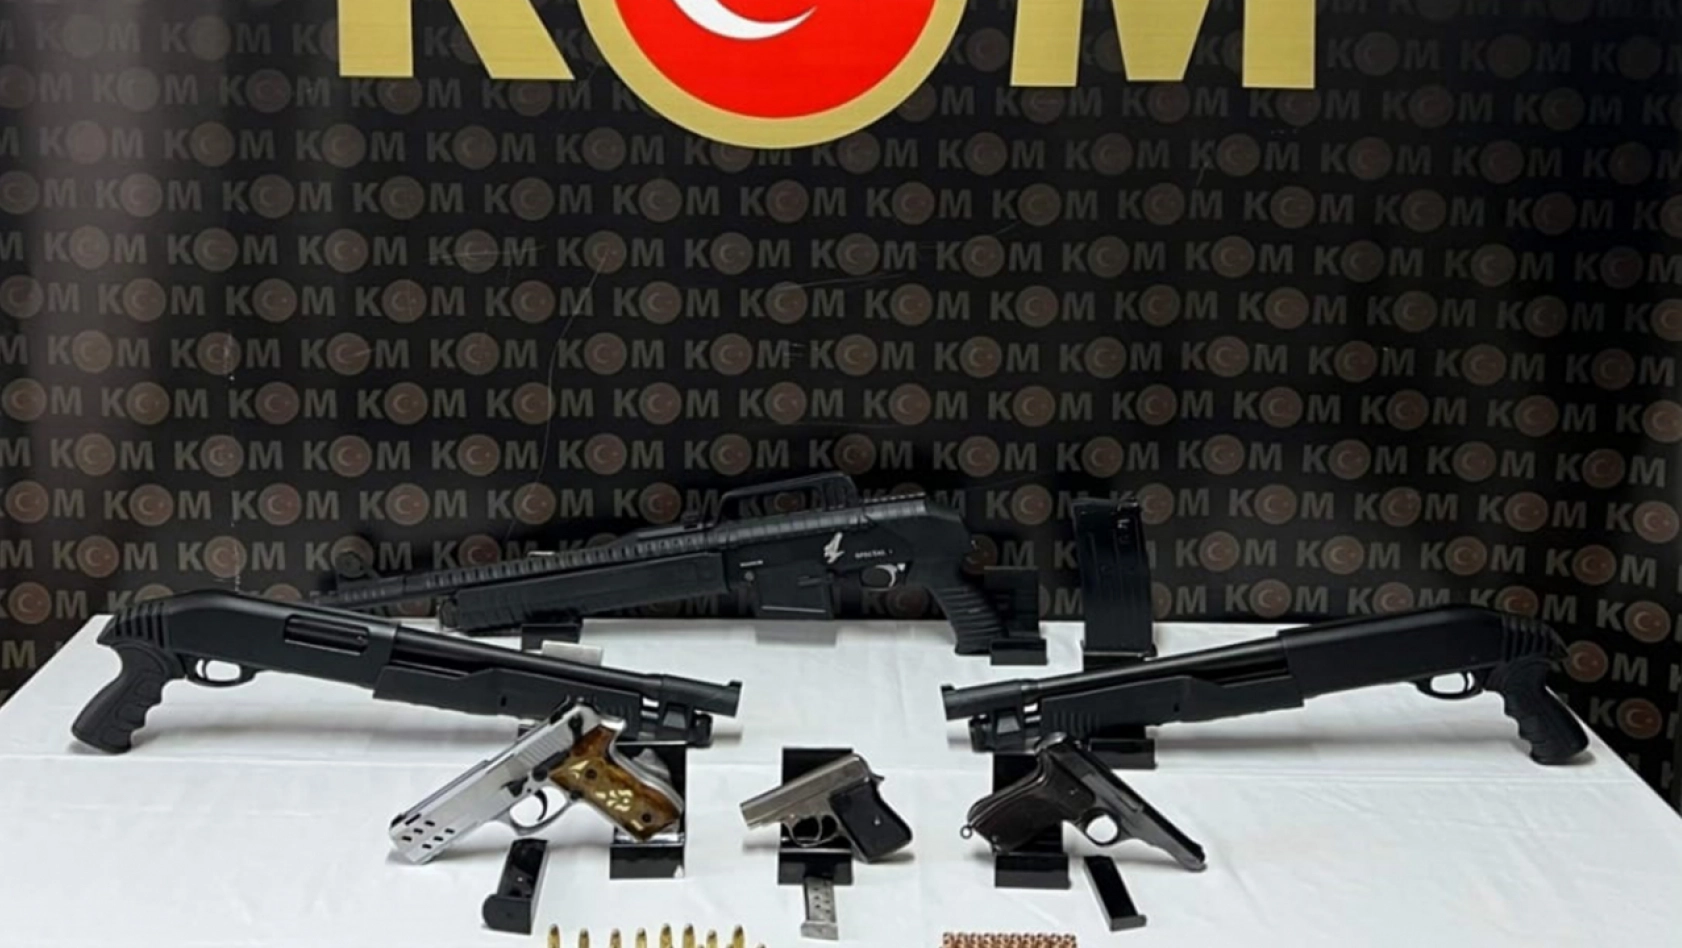 Malatya'da bir iş yerinde çok sayıda silah ele geçirildi